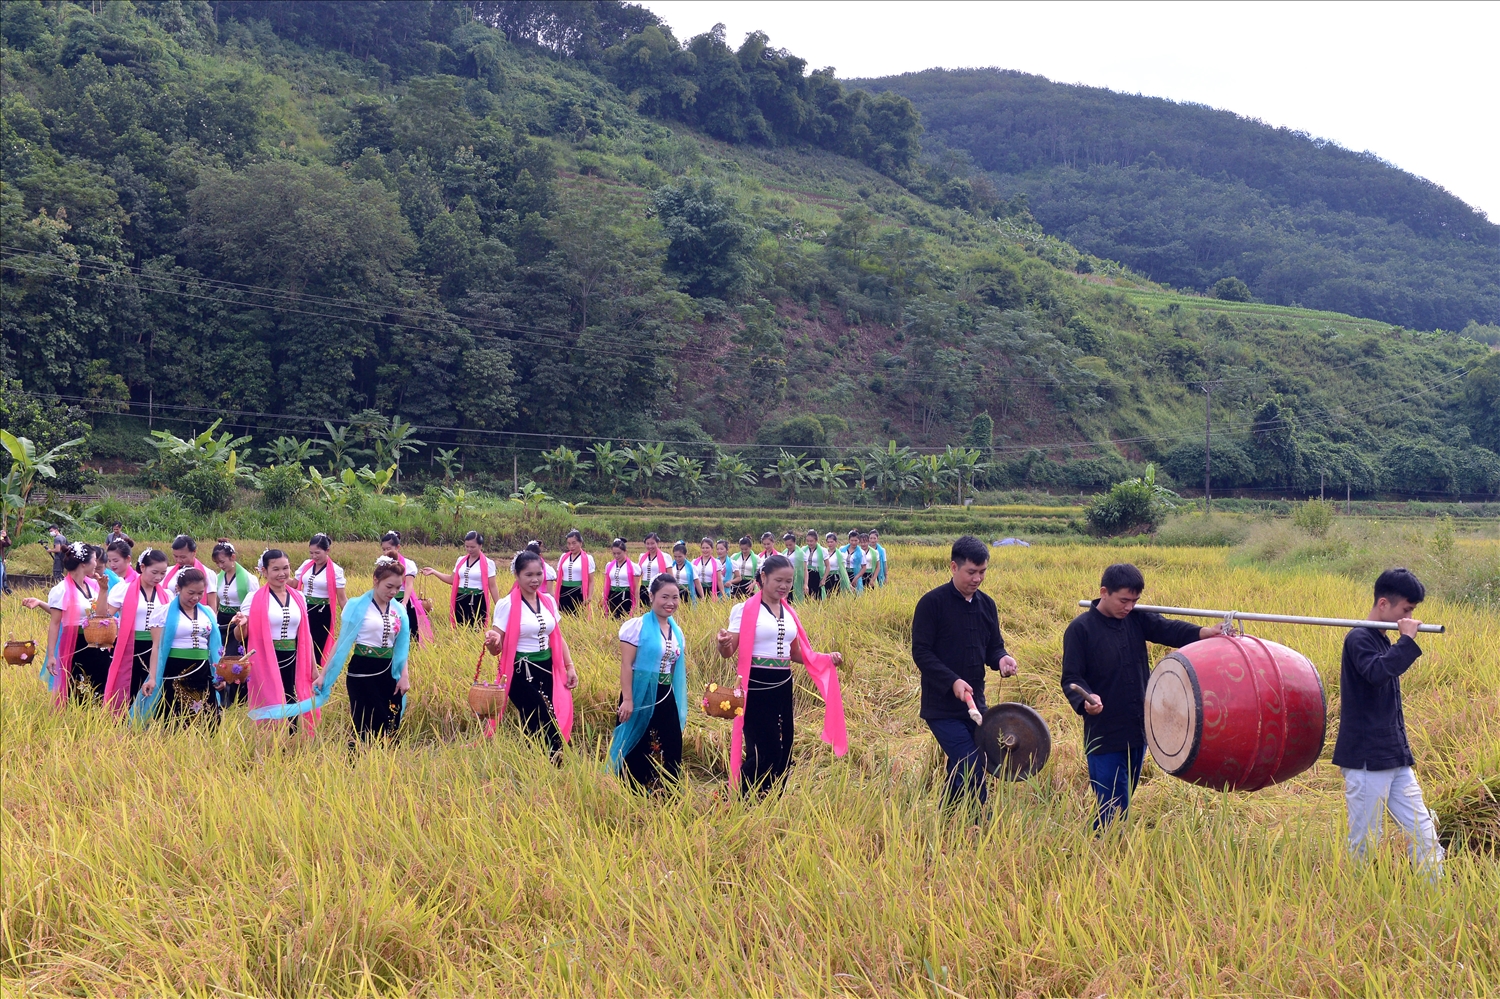 Đoàn rước lễ năm nay đi quanh cánh đồng Huổi Én, xã Mường So, Phong Thổ, một trong cánh đồng đẹp, phì nhiêu nhất Lai Châu.